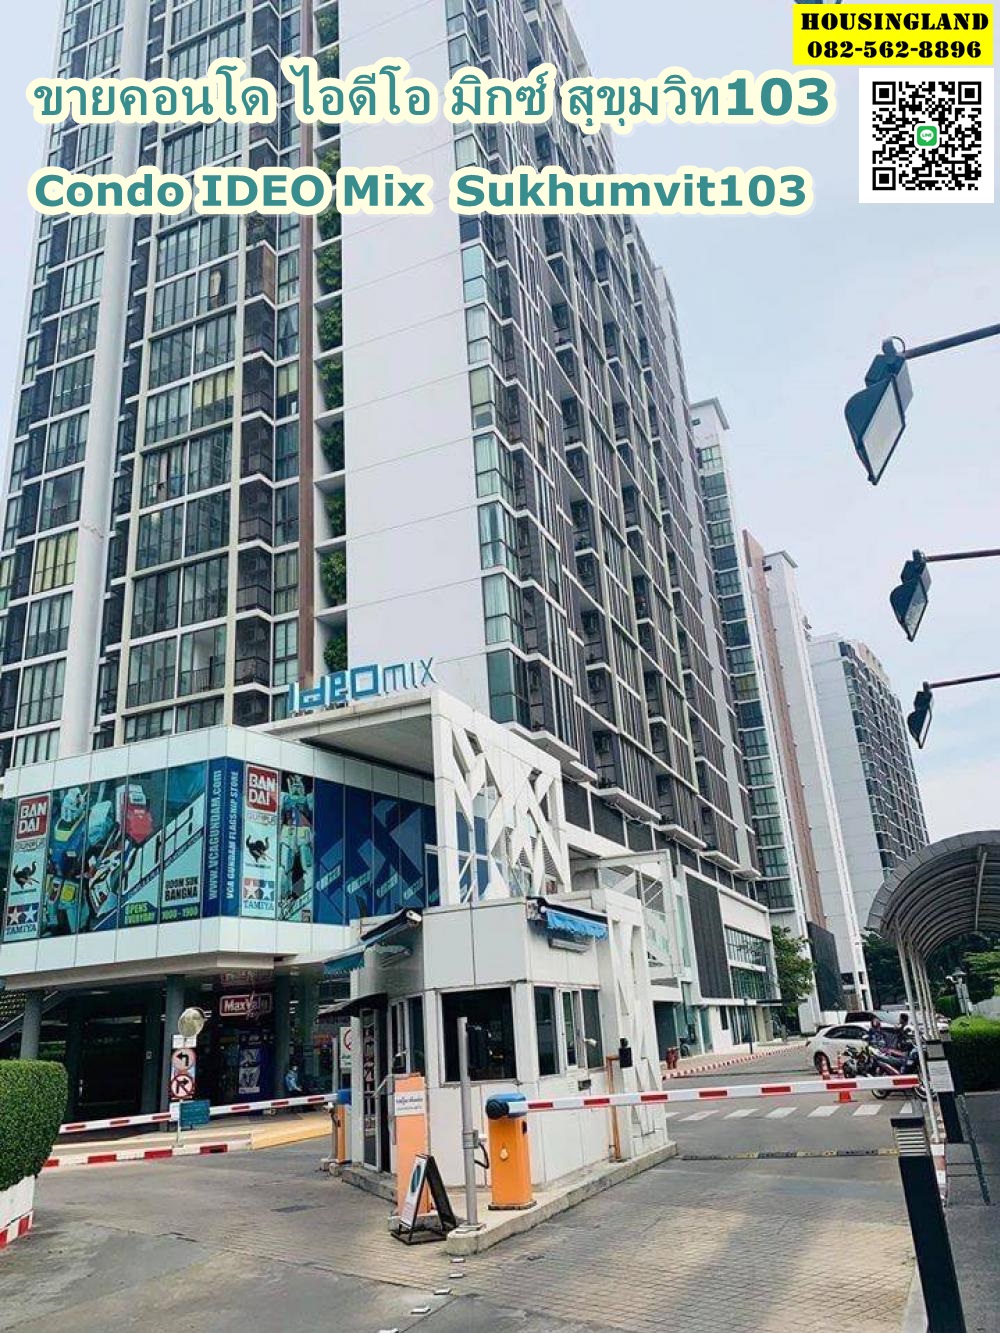 ขายคอนโดไอดีโอ มิกซ์  สุขุมวิท103  IDEO Mix Sukhumvit103 ใกล้สถานีรถไฟฟ้า BTS อุดมสุข 